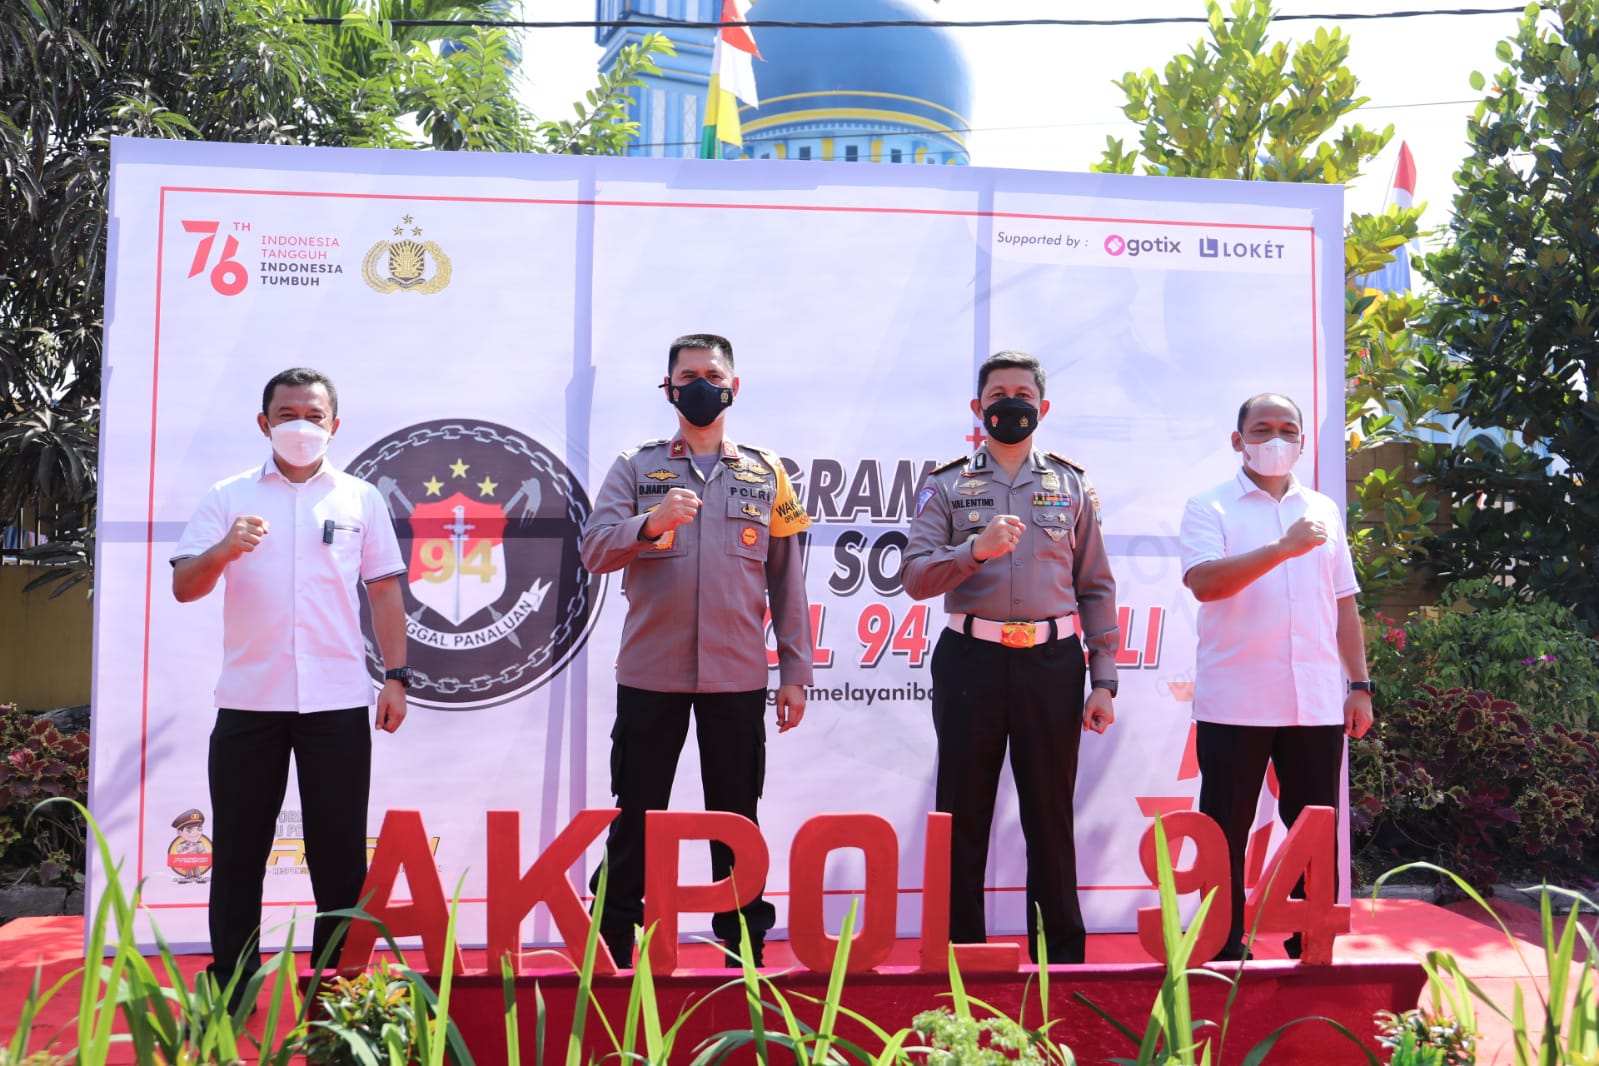 Serentak di Indonesia, Alumni Akpol 94 Tunggal Panaluan Bantu Warga Terdampak Covid-19